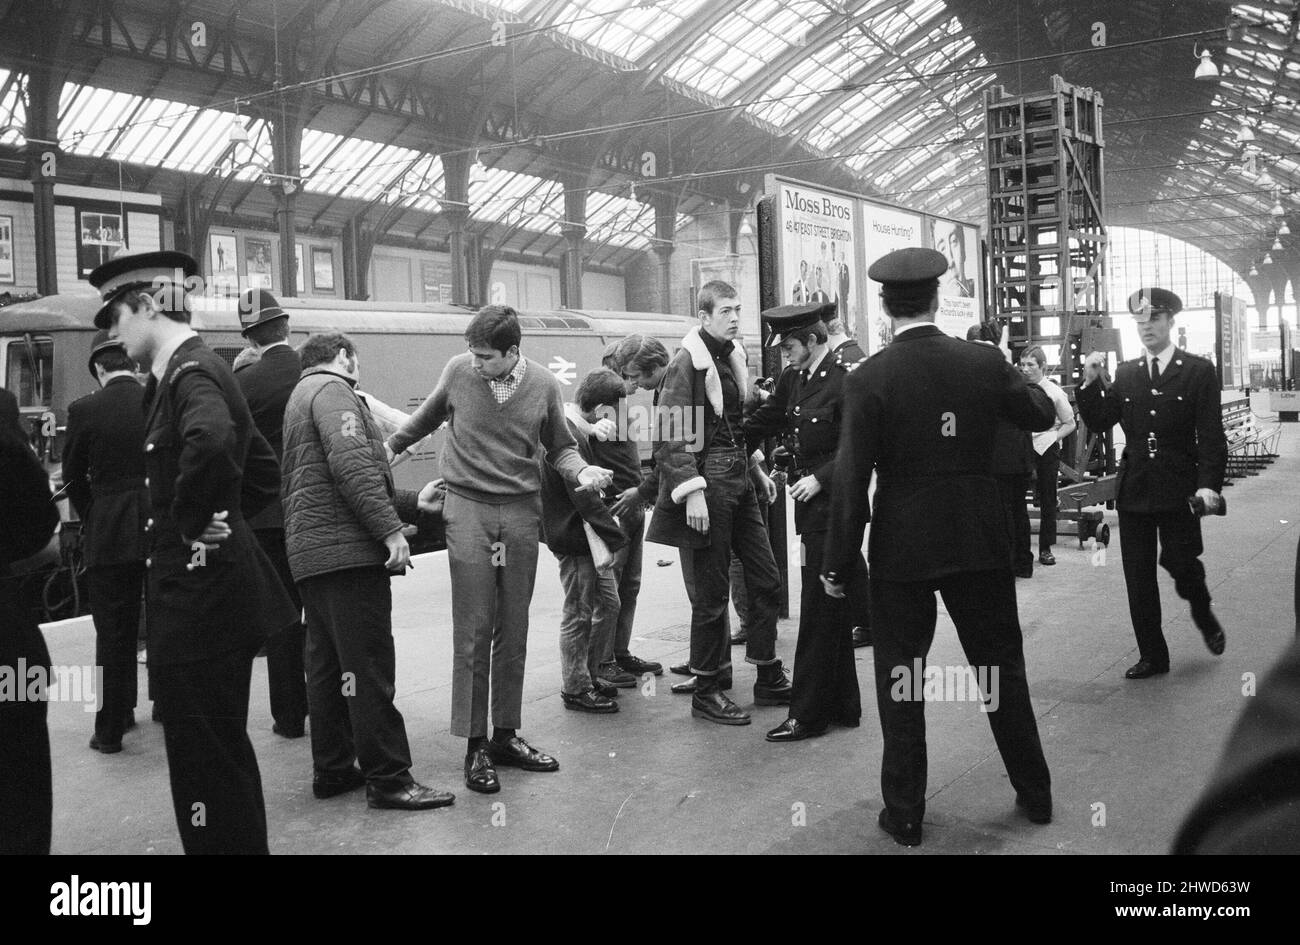 La escena en la estación de tren de Brighton, donde dos docenas de agentes de policía ordenaron, registraron y advirtieron a grupos de cabezas rapadas cuando llegaron a la ciudad en el fin de semana de vacaciones en el Banco. 31st de agosto de 1970. Foto de stock